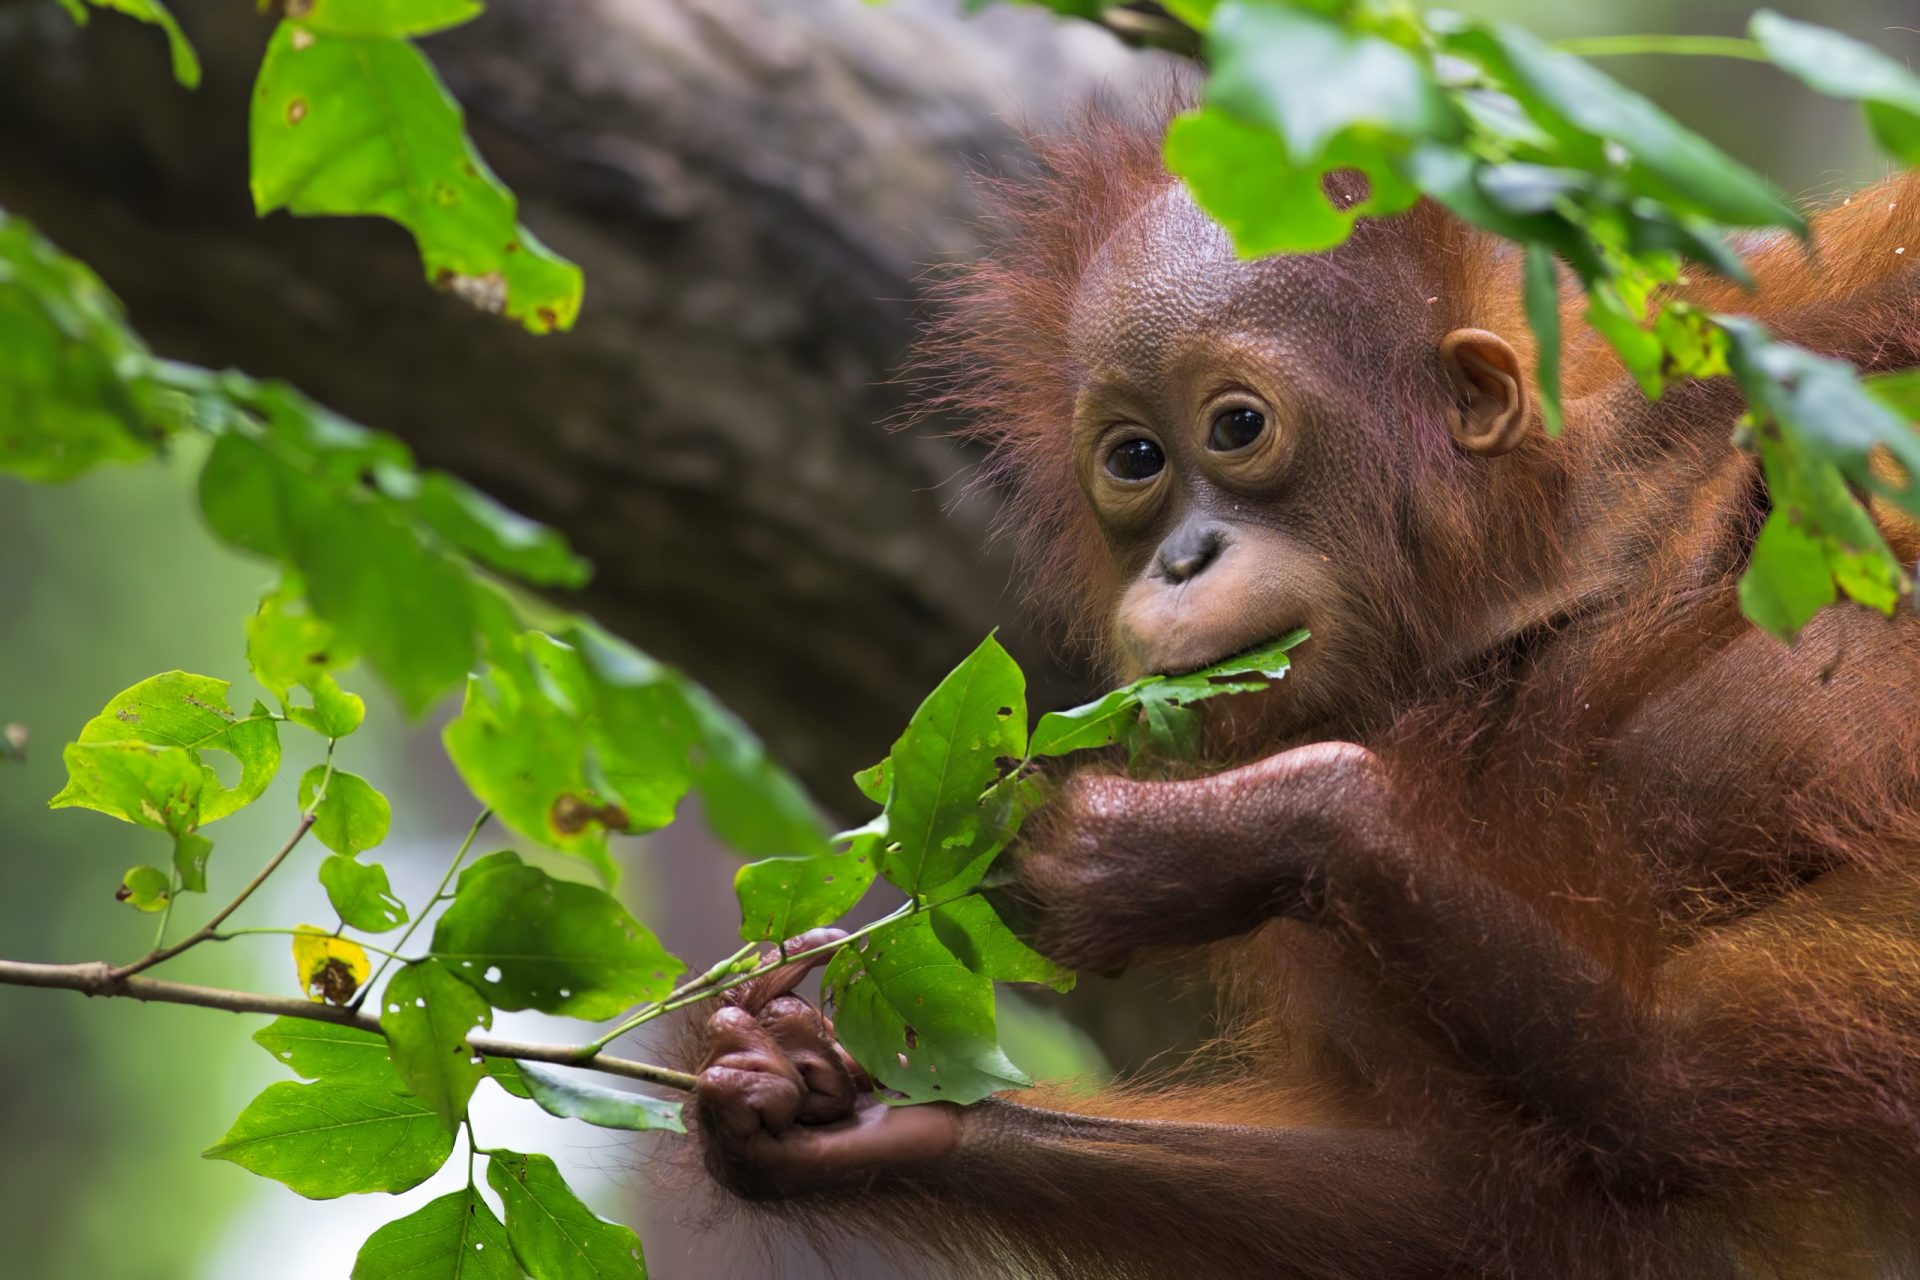 Jardim zoológico alemão mata orangotango em fuga